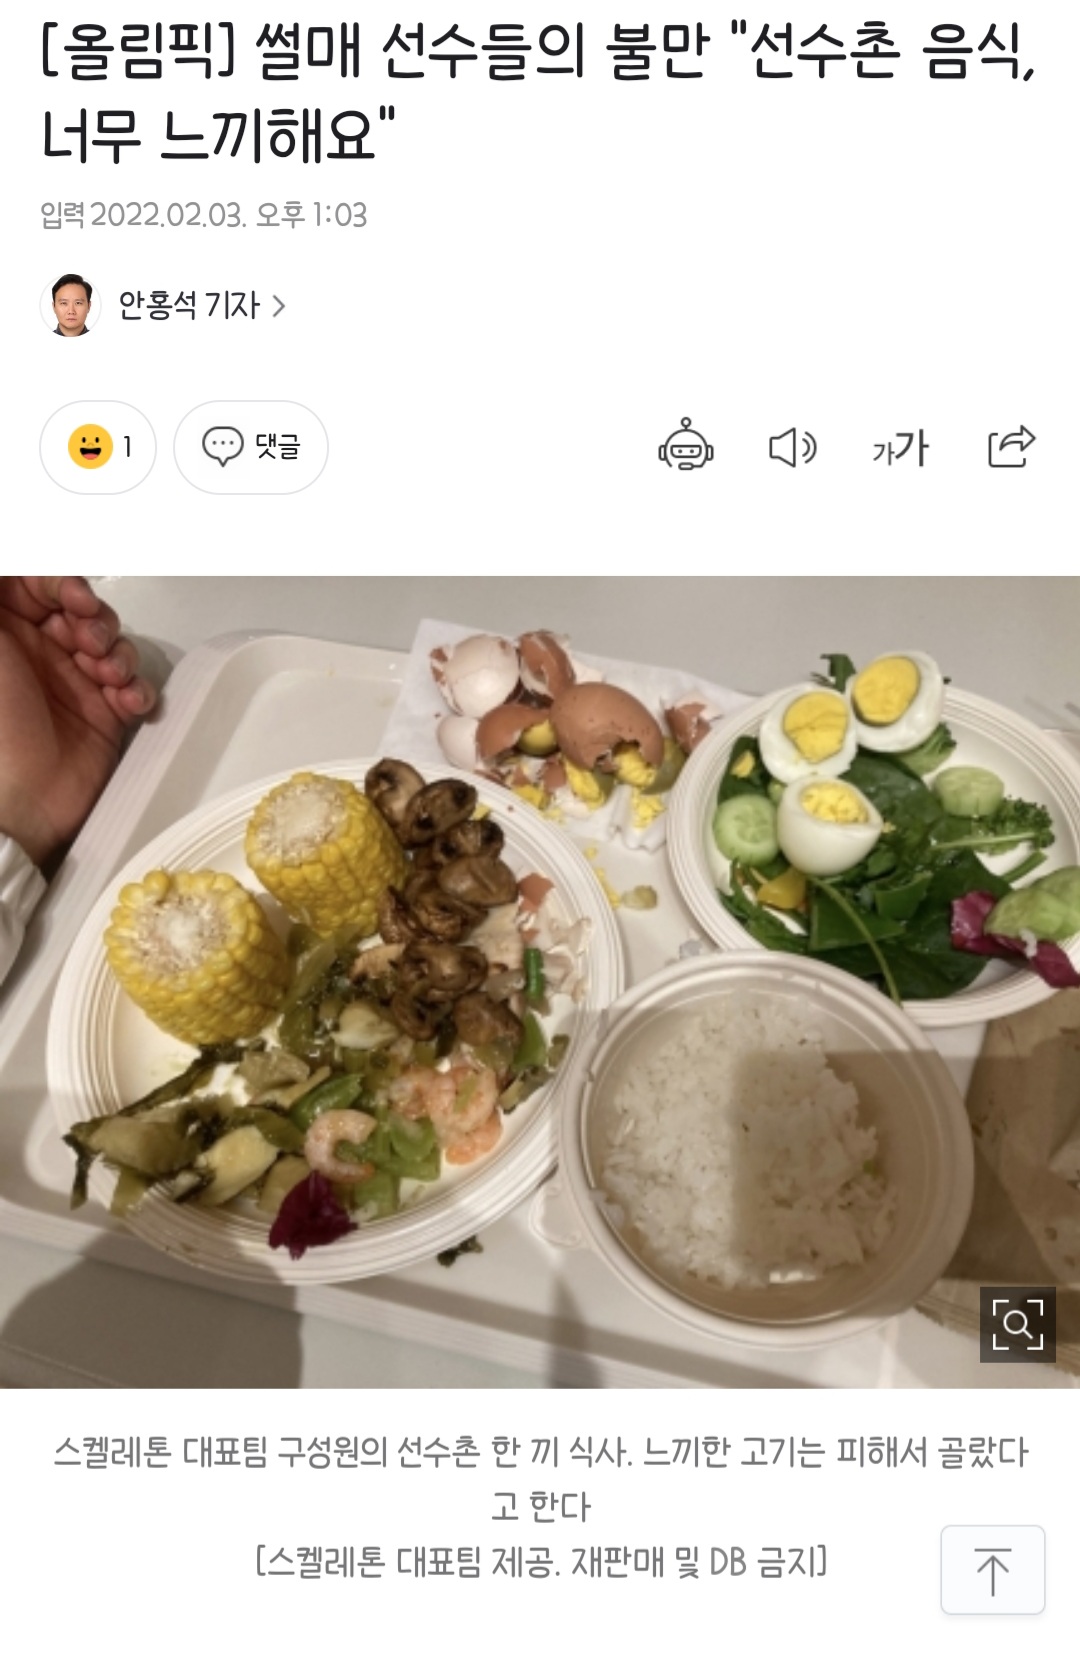 올림픽 선수촌 밥이 너무 맛없어서 즉석식품을 제공중이라는.news